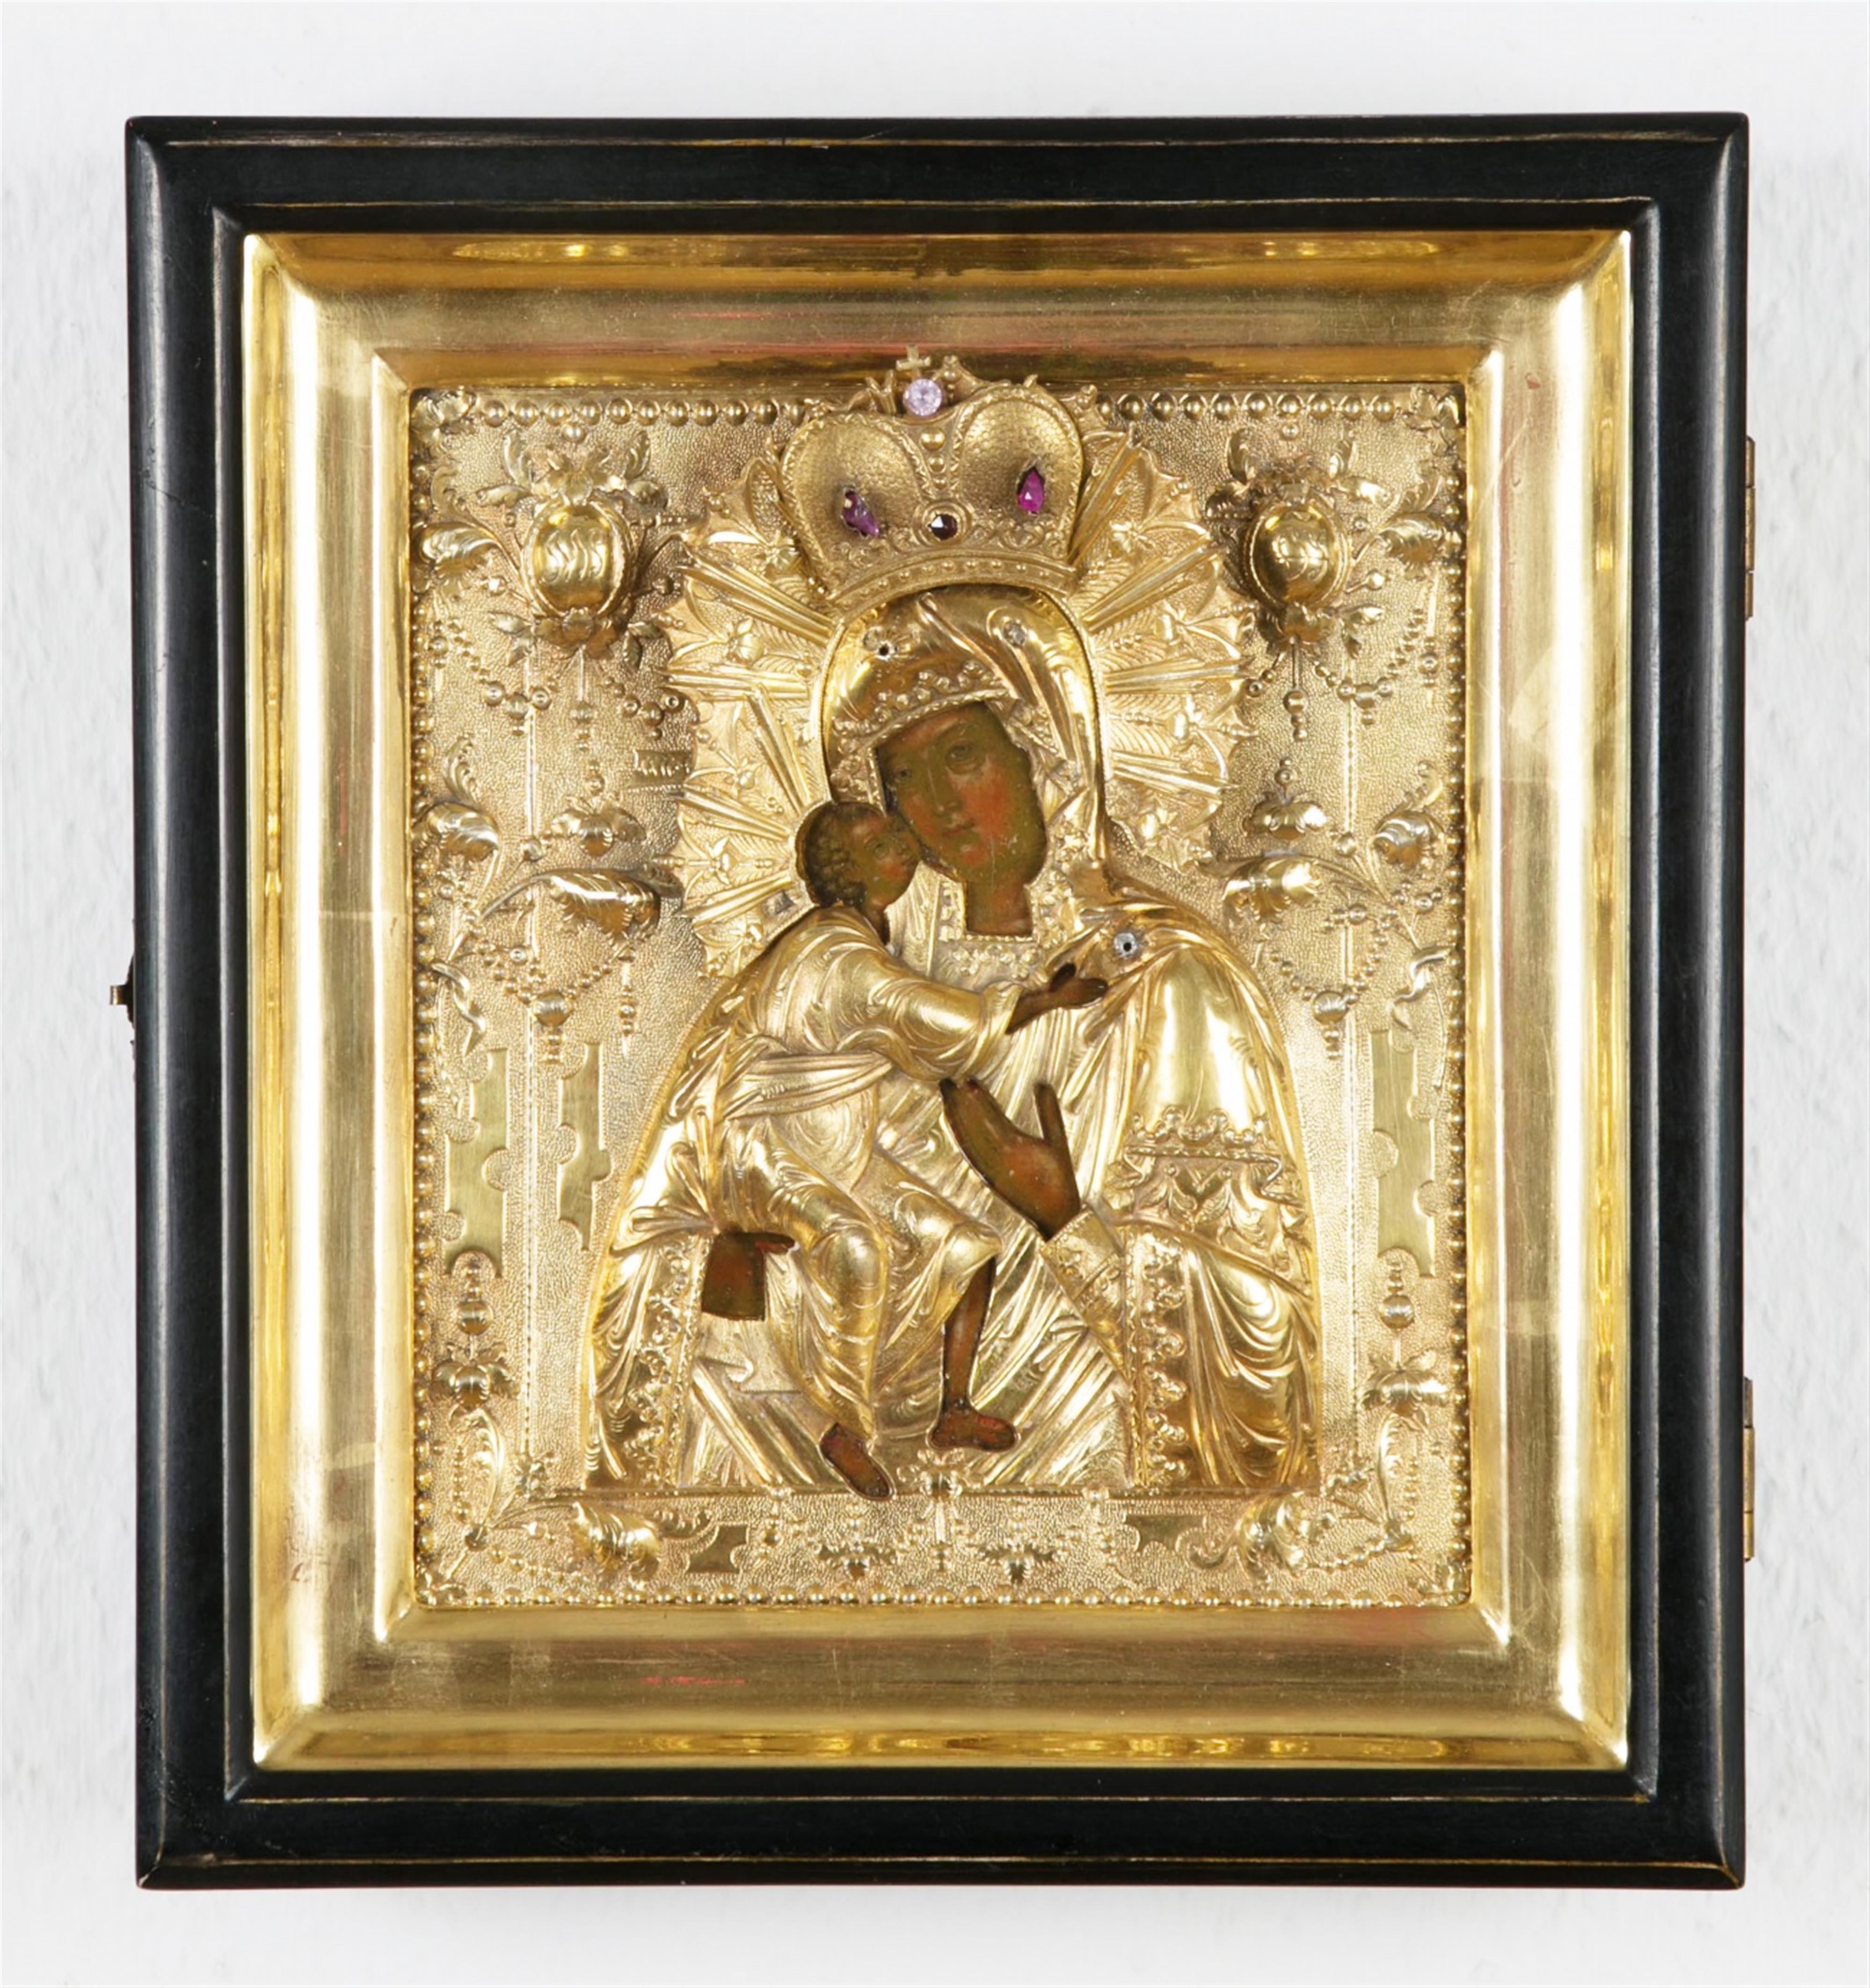 Russischer Meister Moskau, Ende 18. Jahrhundert - Ikone mit der Gottesmutter von Tolga - image-1